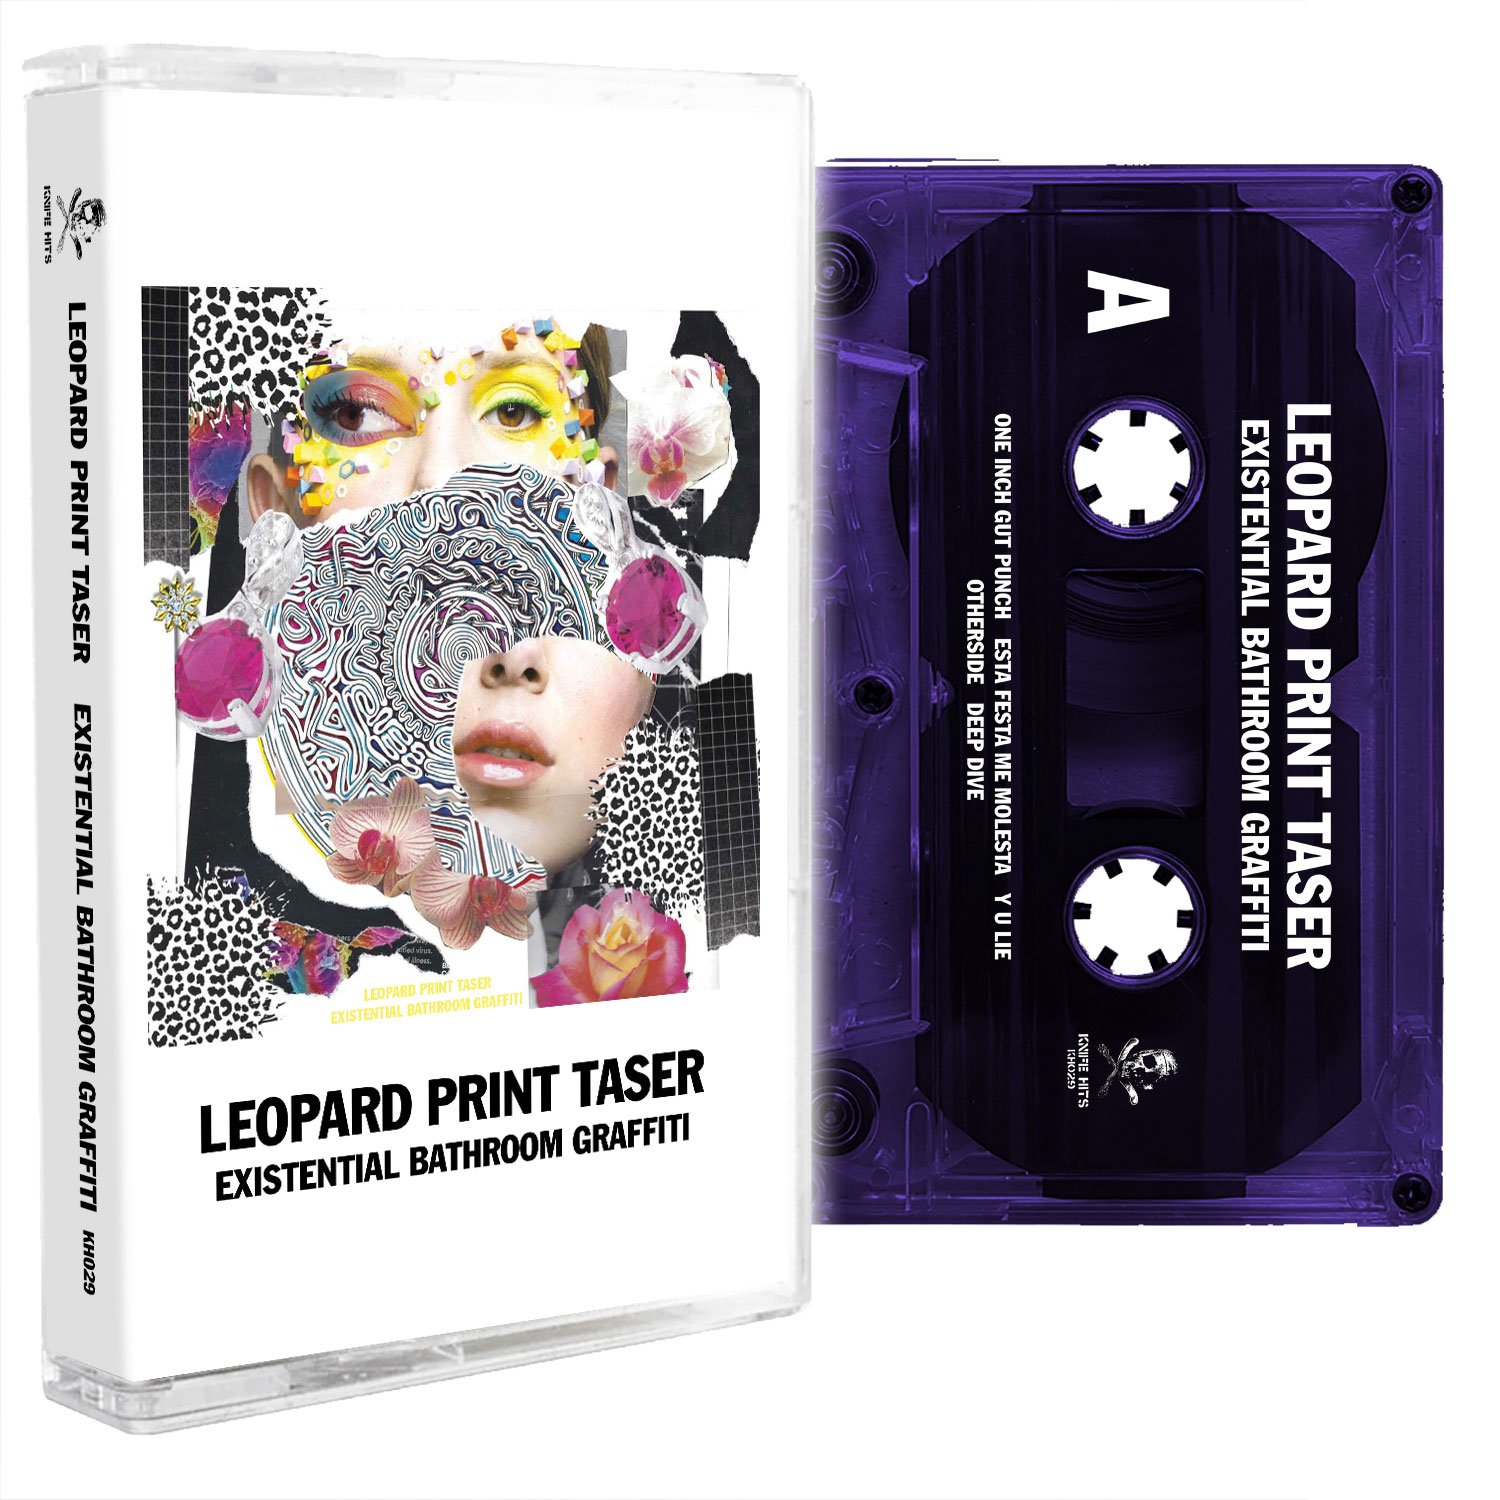 Leopard Print Taser - Existential Bathroom Graffiti cassette